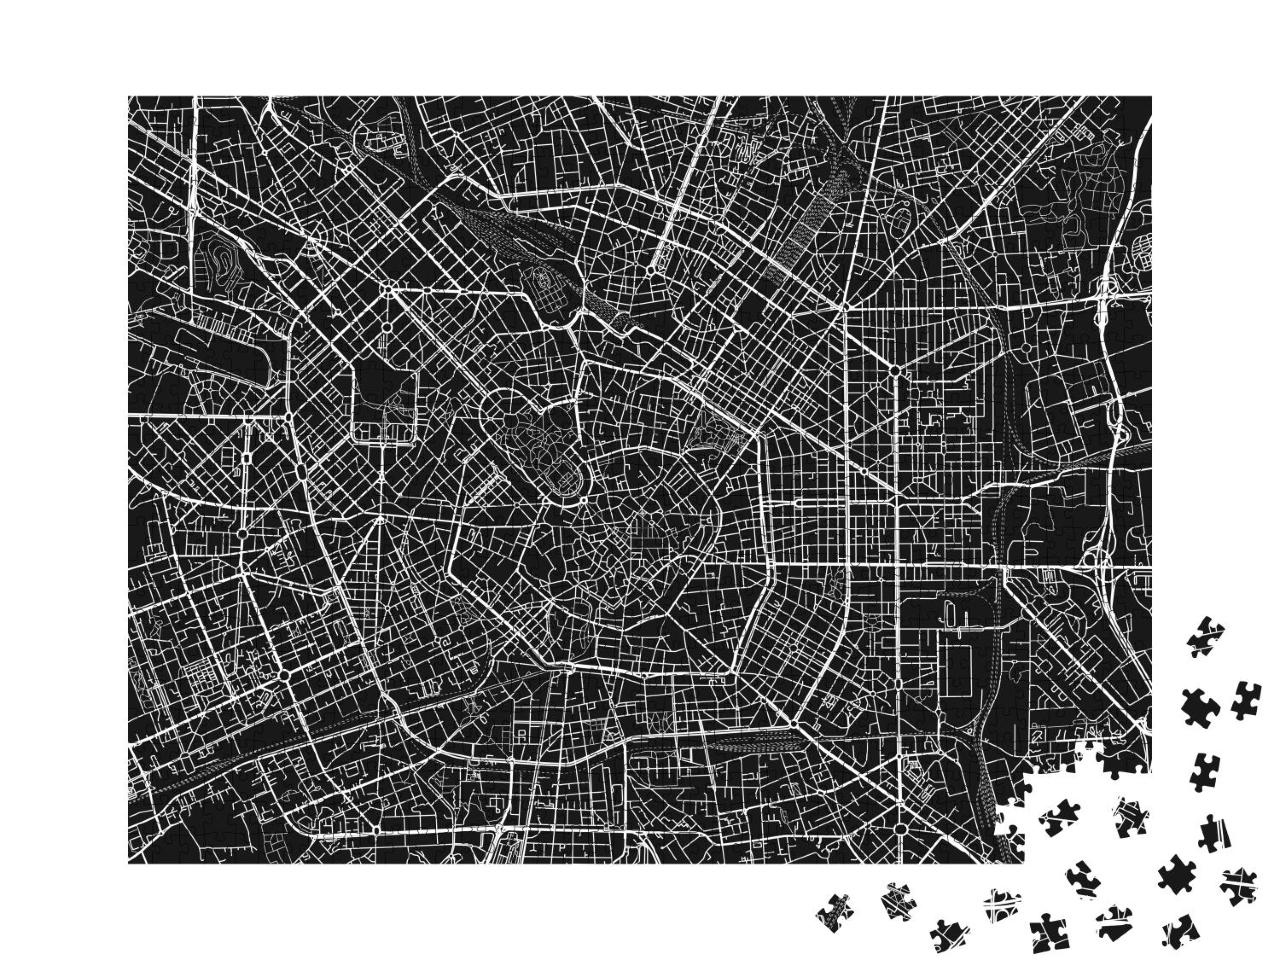 Puzzle 1000 Teile „Vektor-Stadtplan von Mailand“